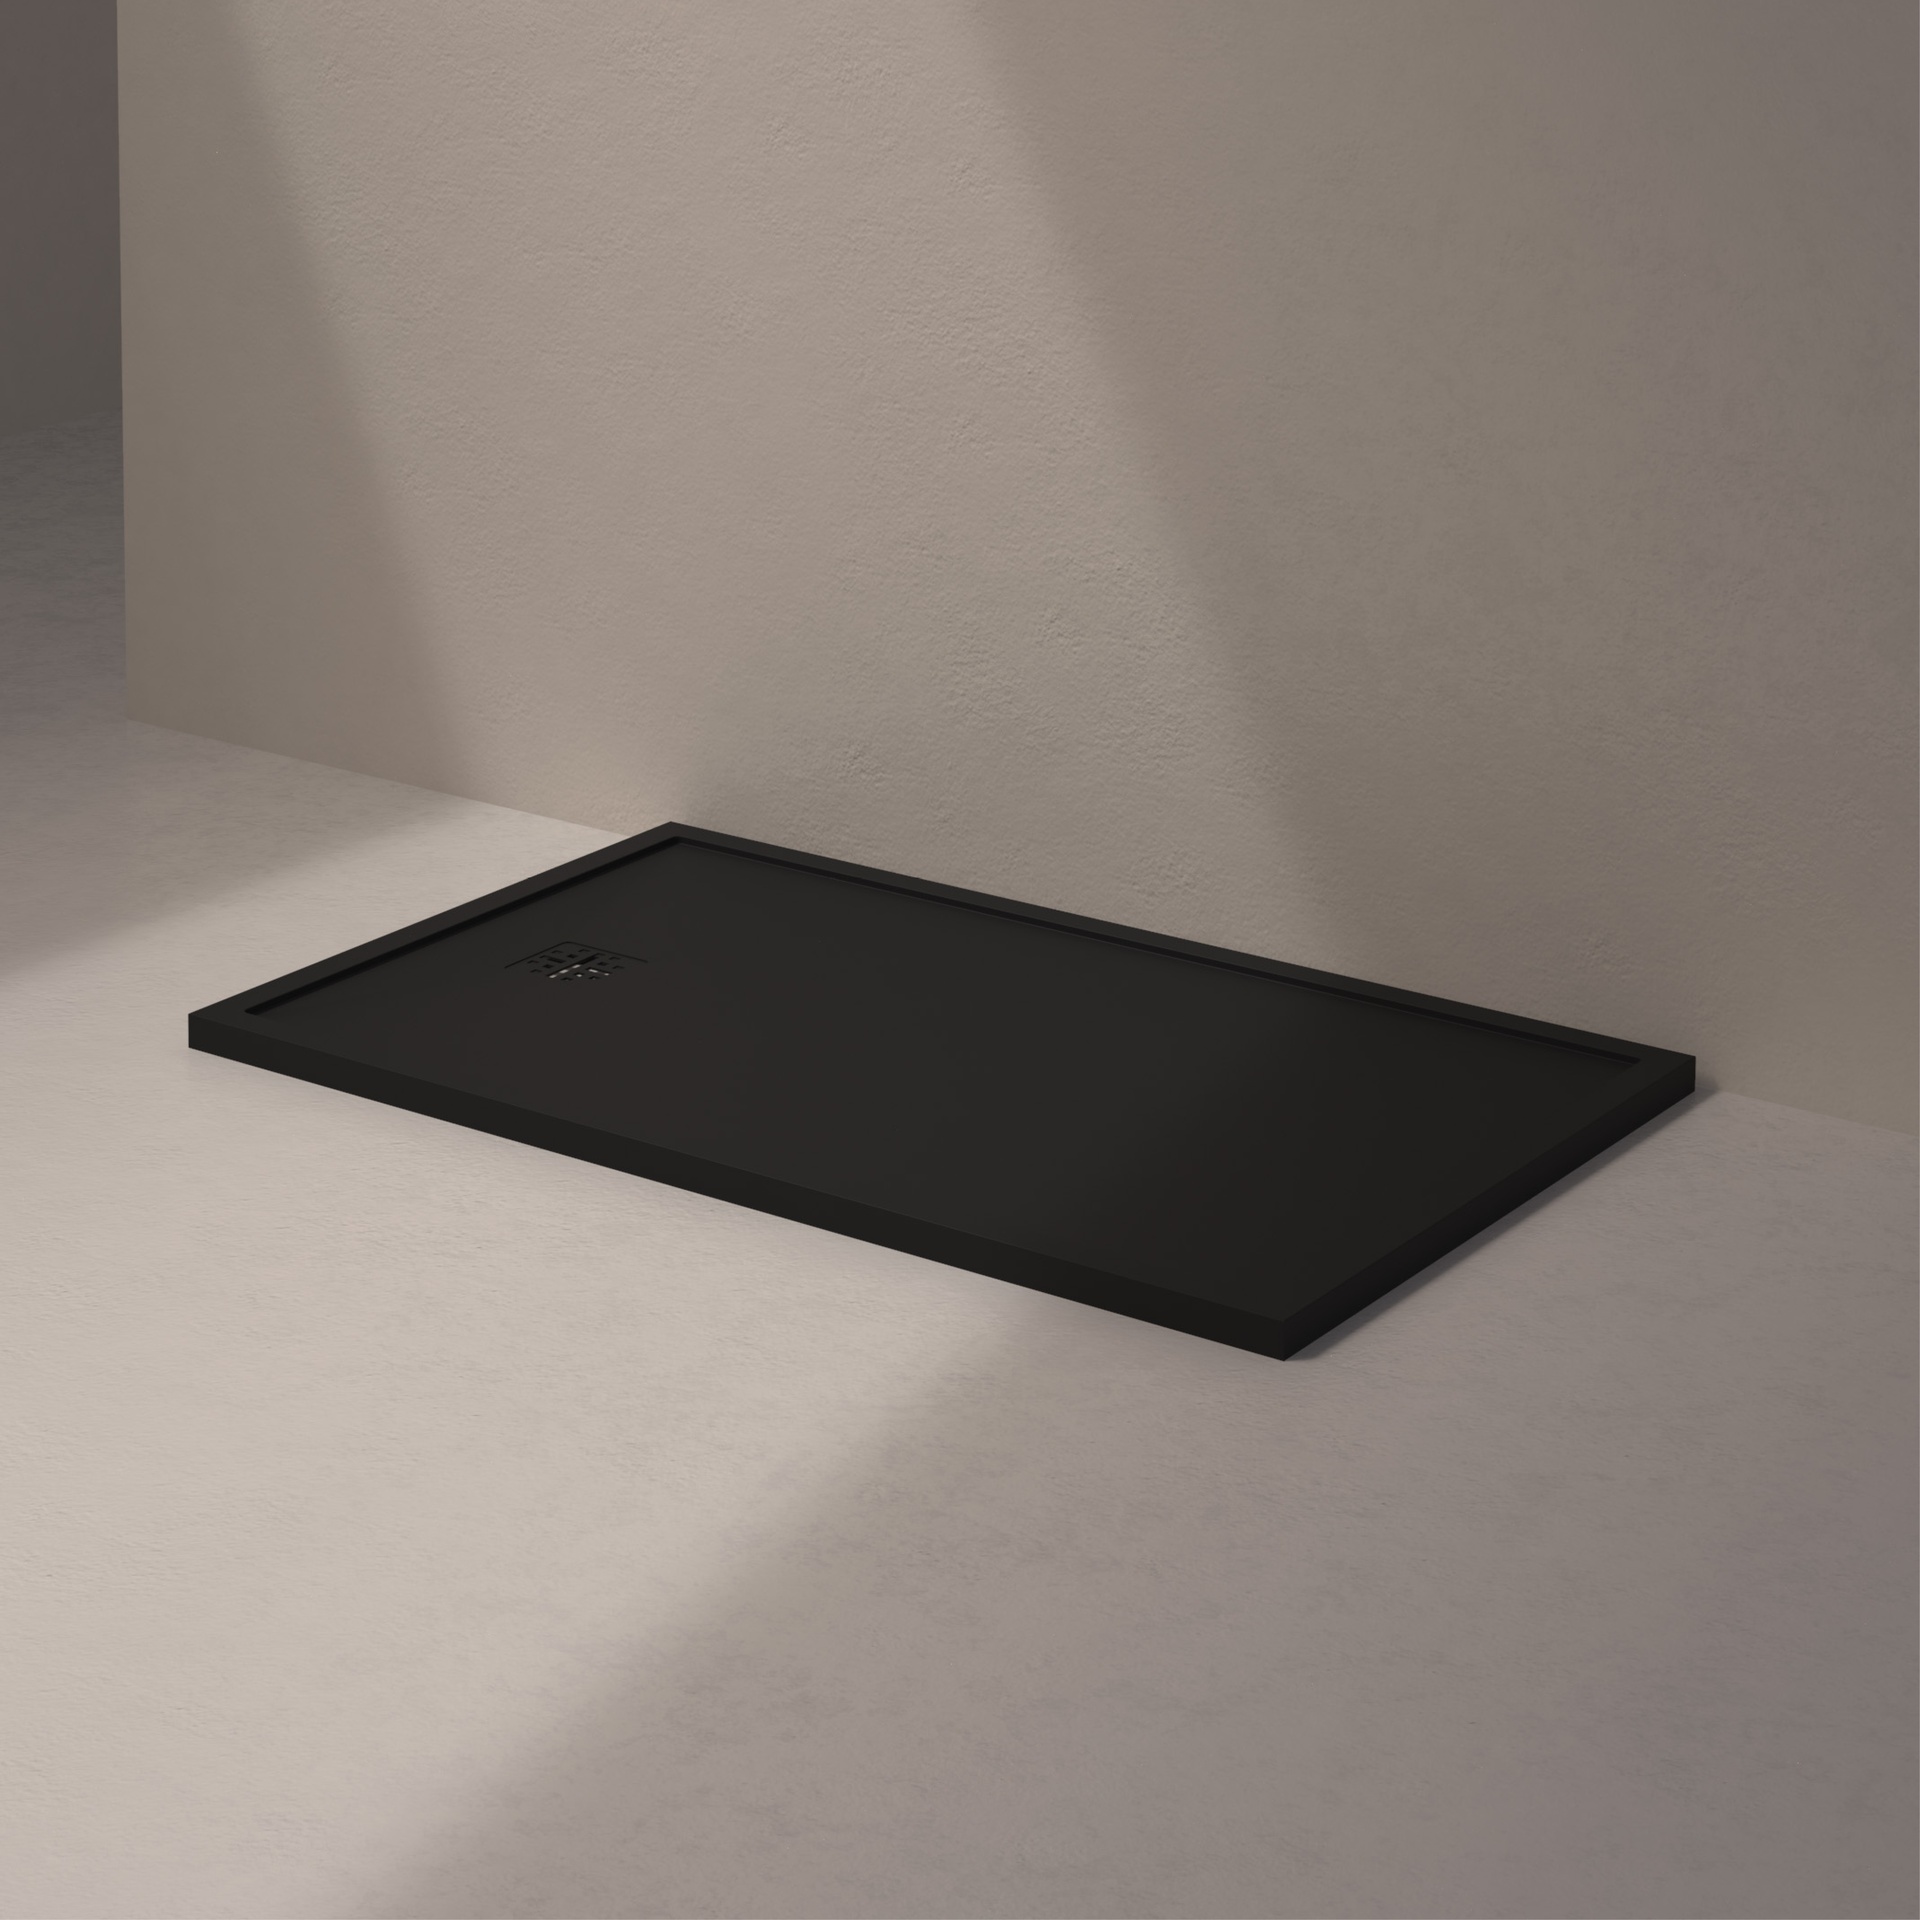 [MSTES90140-BLACK] Mist douche vloer, korte zijde afvoer (140x90, natuursteen zwart)